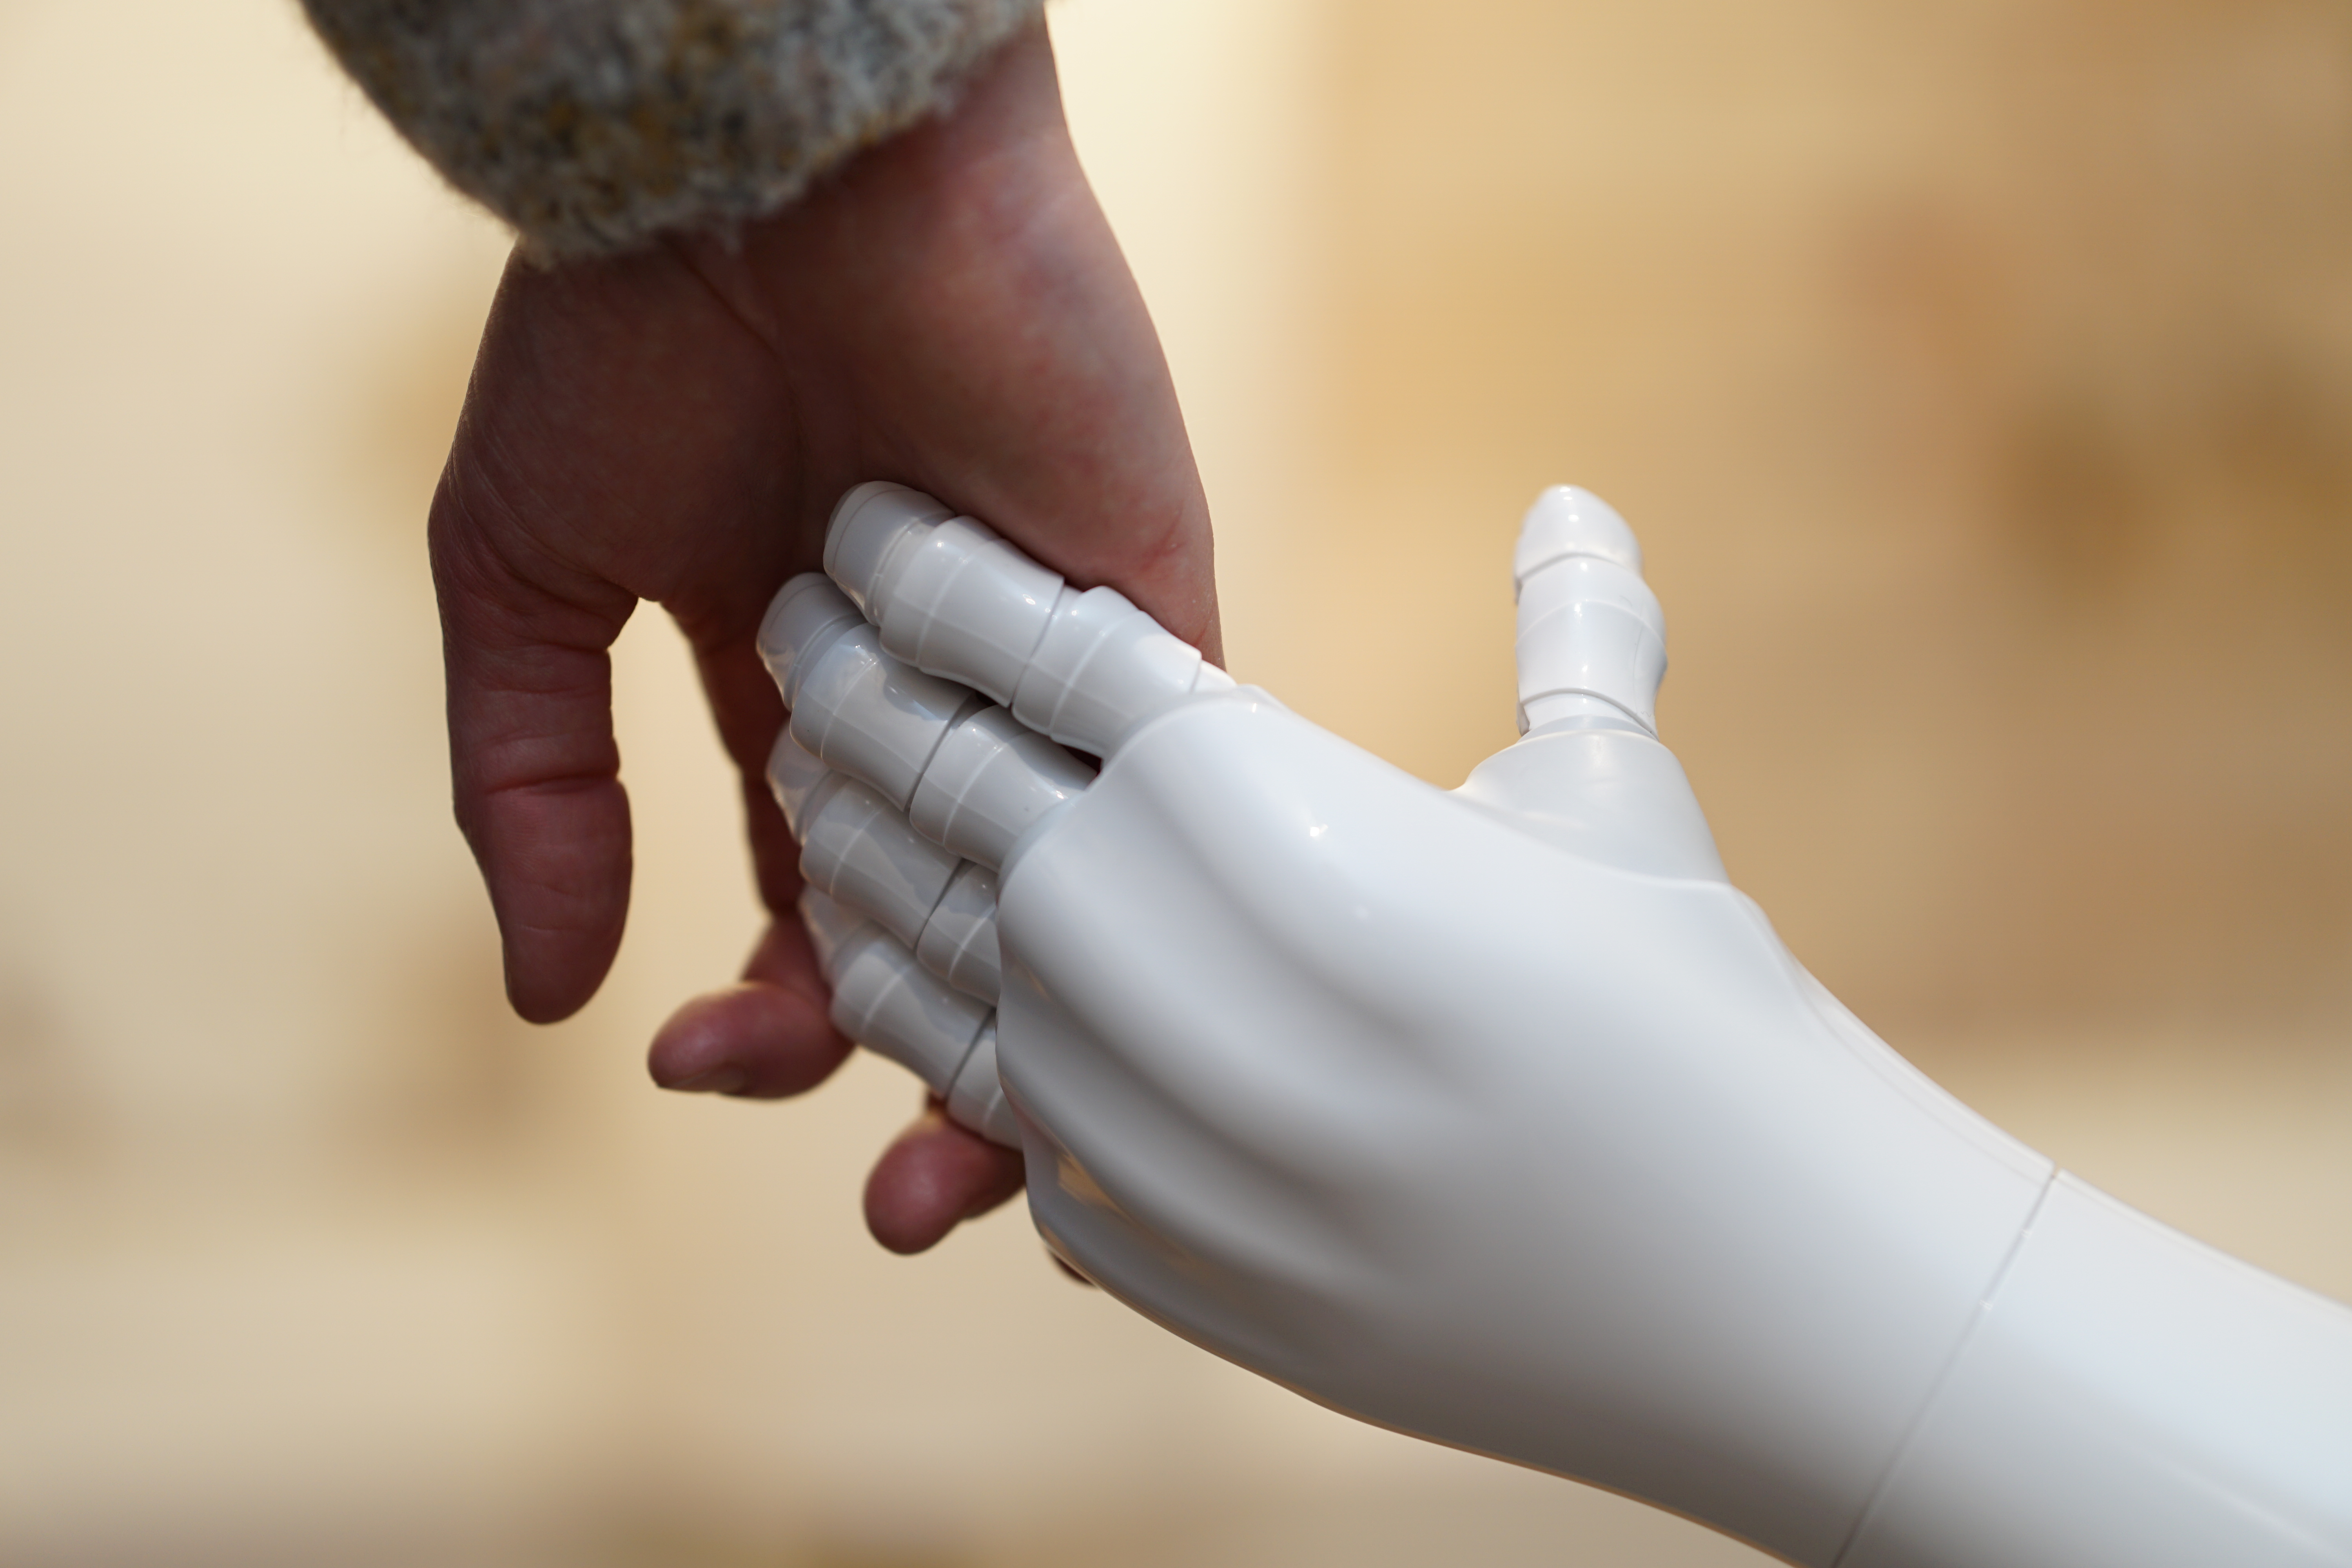 En menneskehånd og en robothånd holder hender i et symbol på samarbeid mellom mennesker og teknologi.